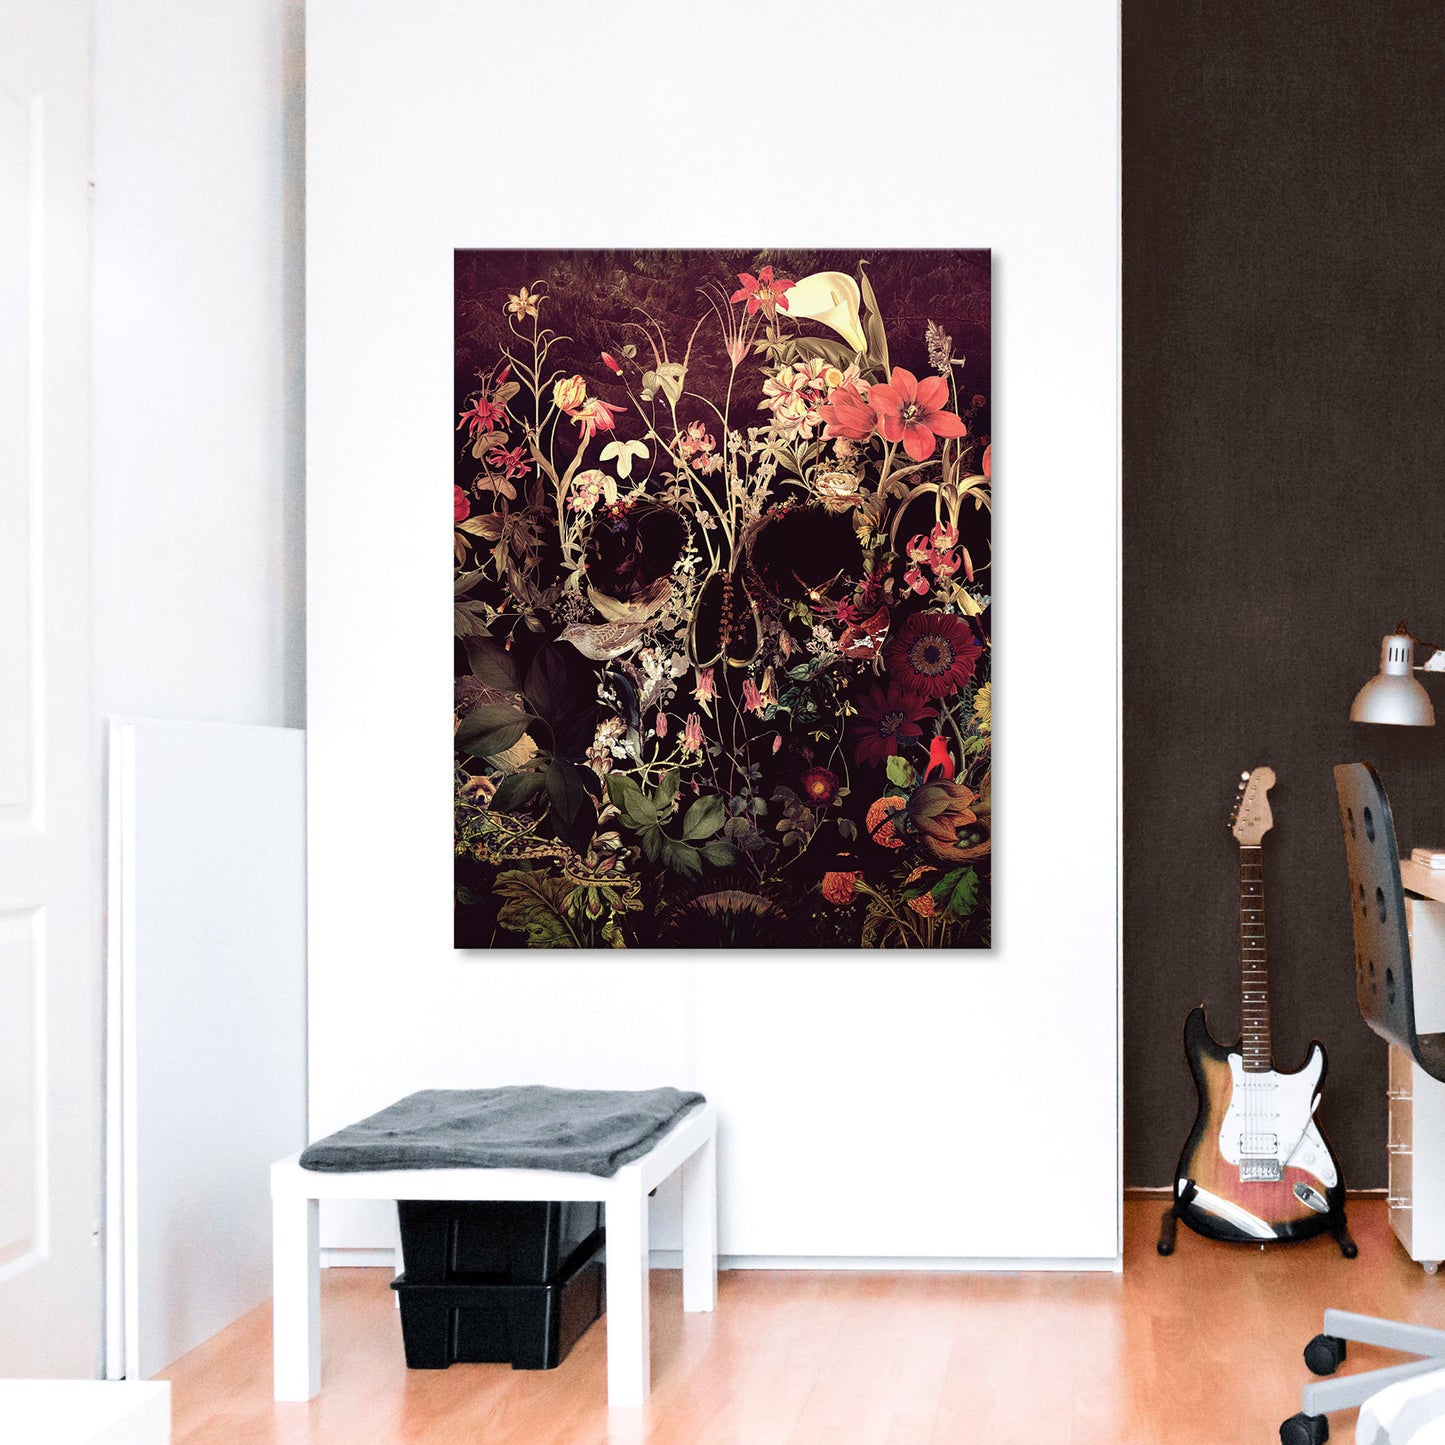 Bloom Skull Canvas Print, Flower Skull Canvas Art Print, Sugar Skull Canvas Art Home Decor Gift, Gothic Floral Skull Wall Art For Halloween